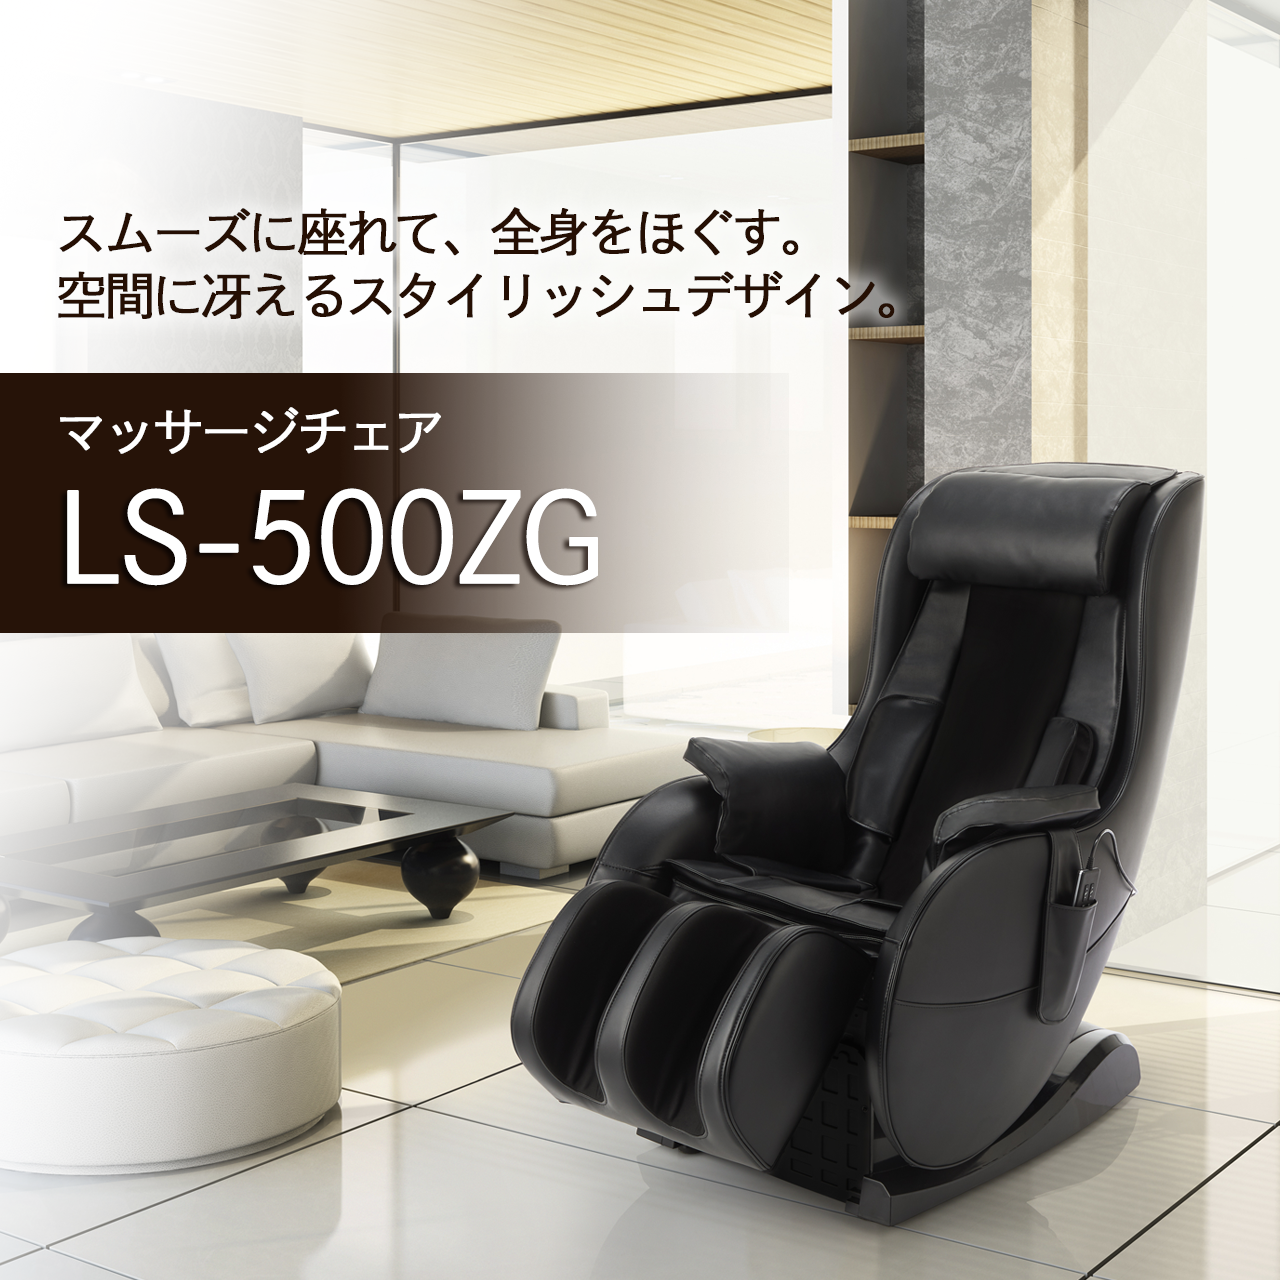 アウトレット☆送料無料 フジ医療器 マッサージチェアLO57 黒 LS-500ZG 代引不可